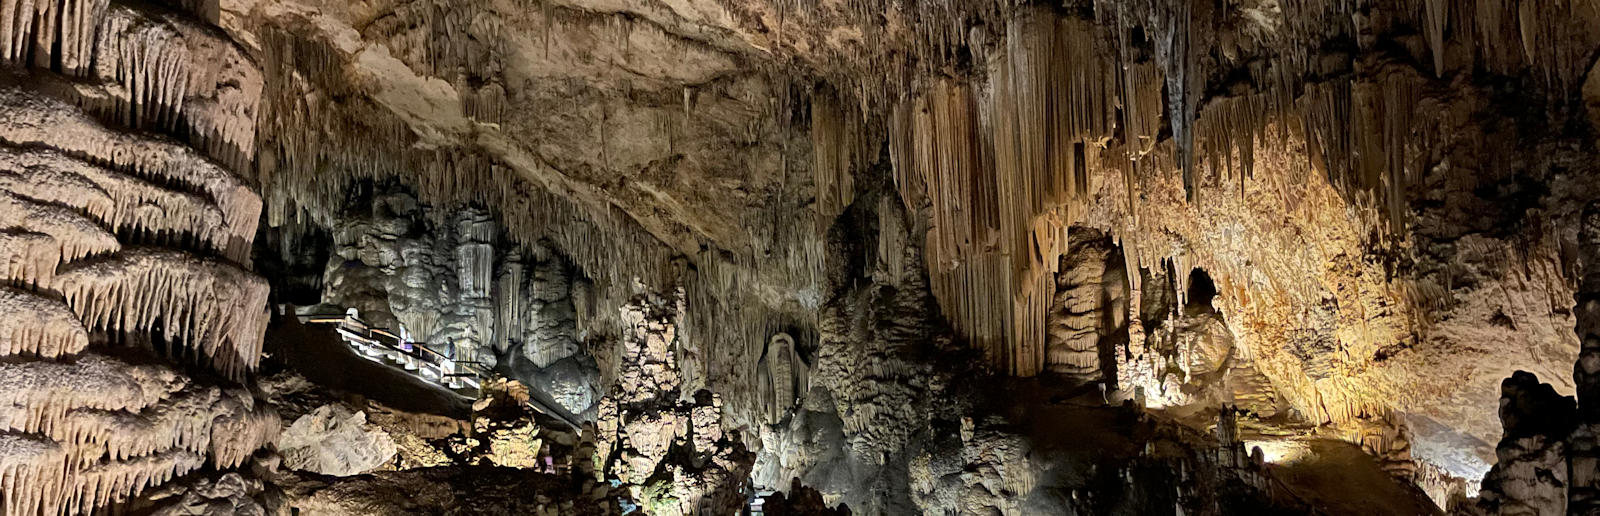 Nerja-grotterne